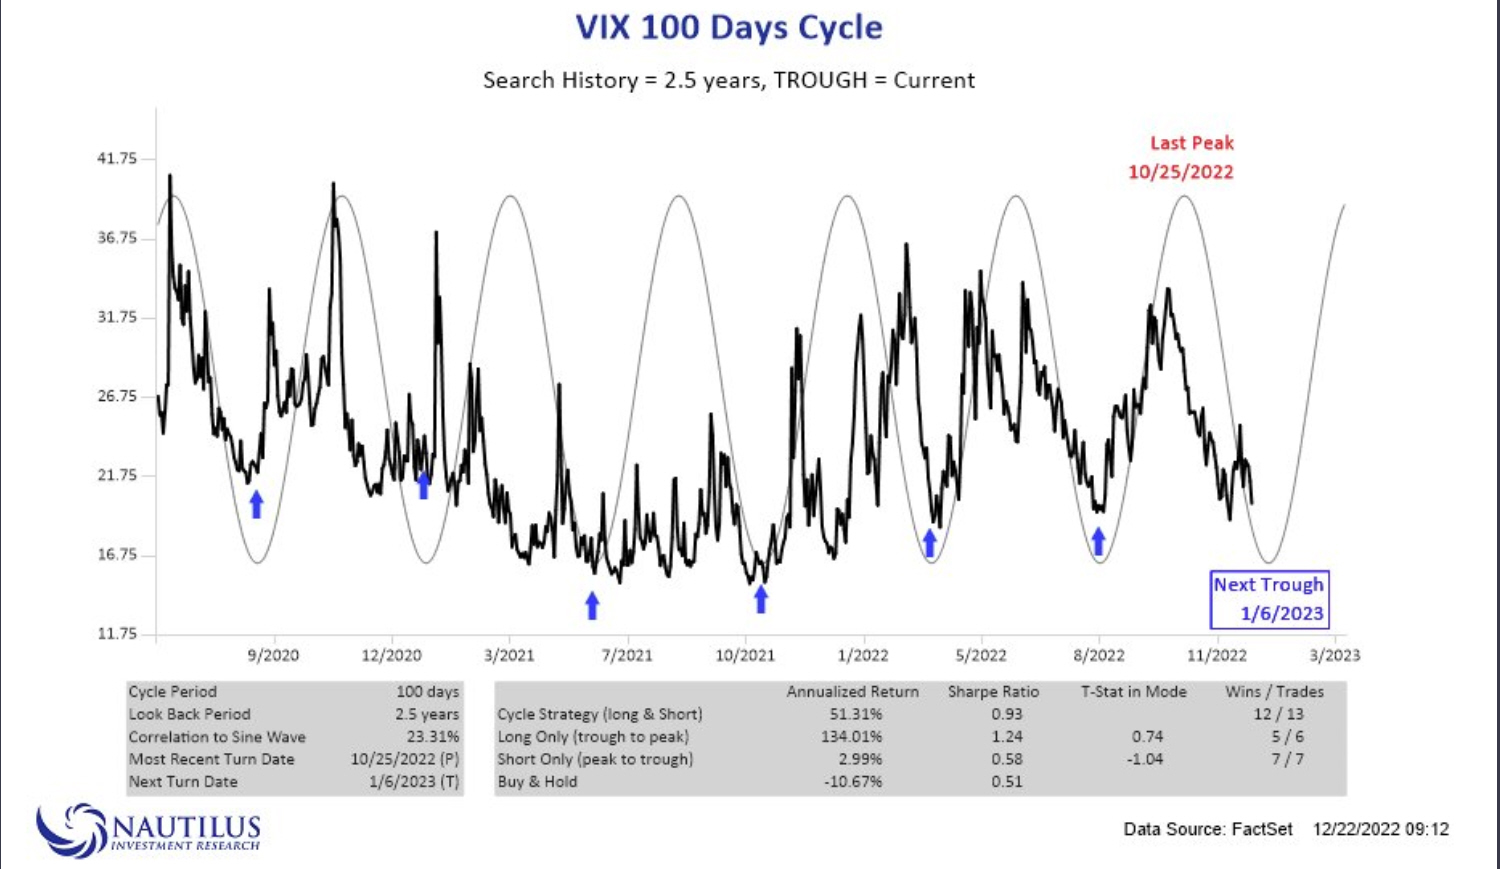 El preocupante aspecto de la VIX por los ciclos de 100 días